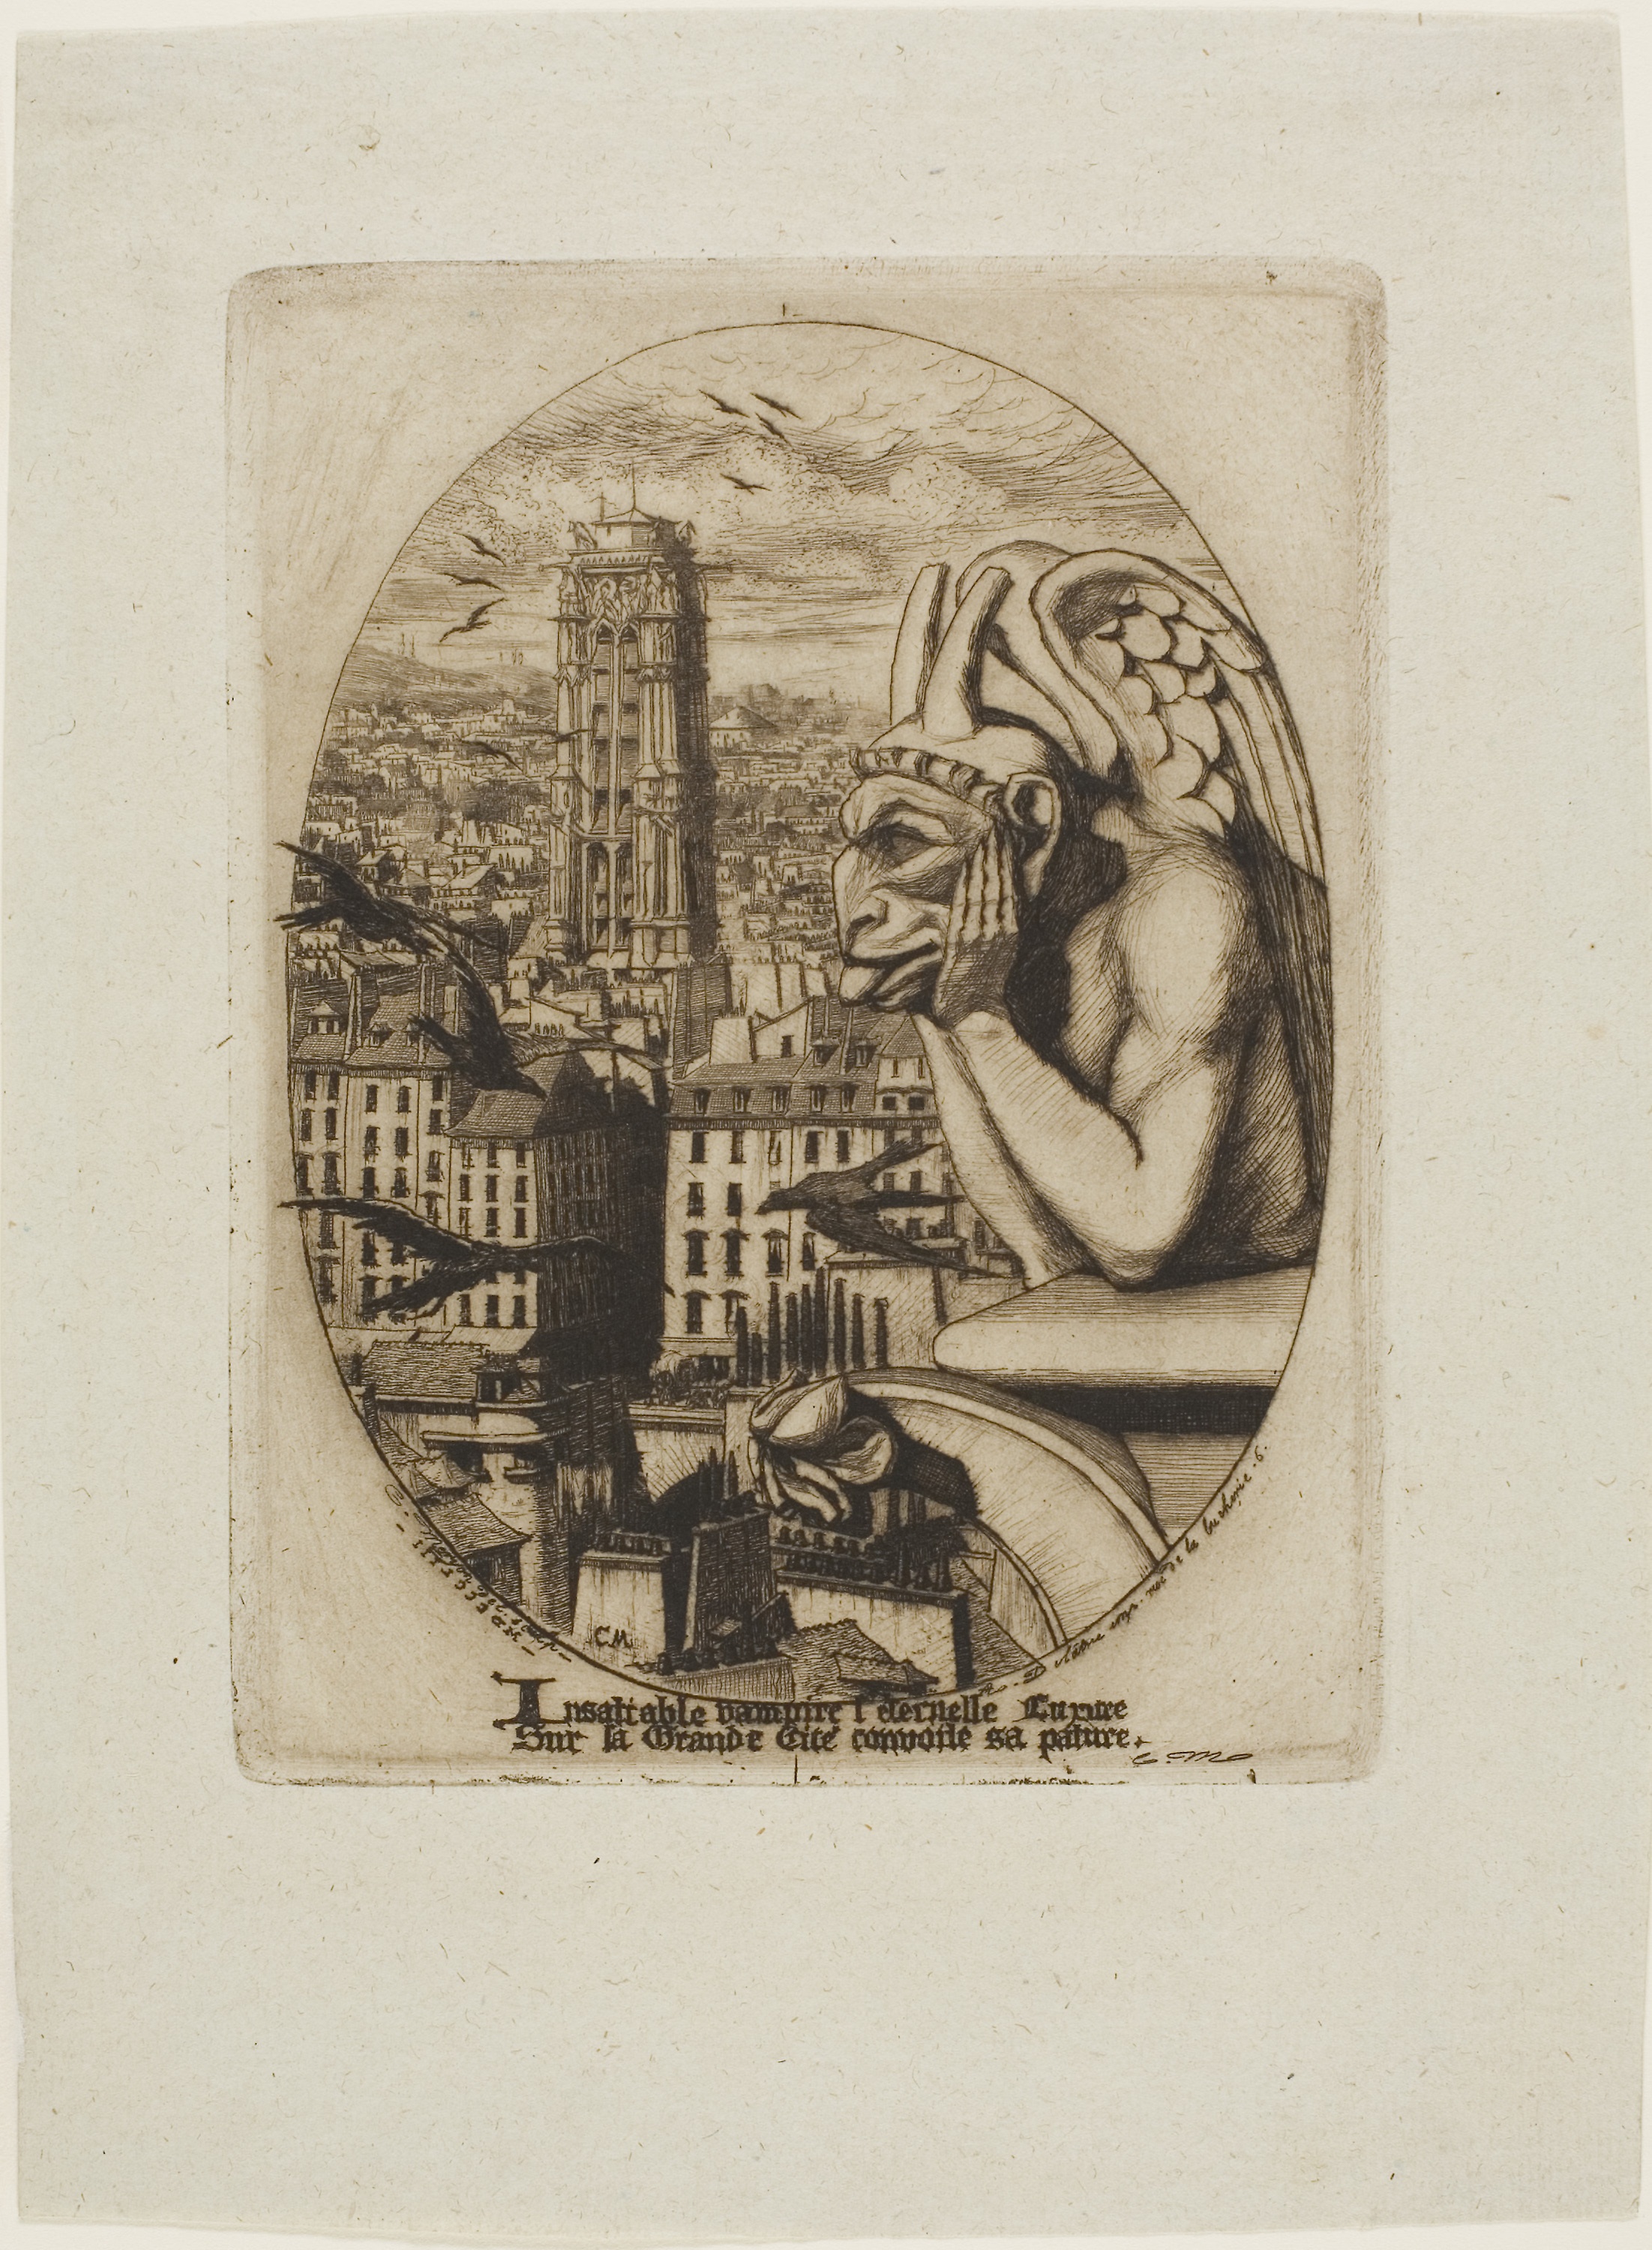 思提志（吸血鬼） by 查尔斯 梅里翁 - 1853 - 15.5 x 11.5 cm 芝加哥藝術博物館